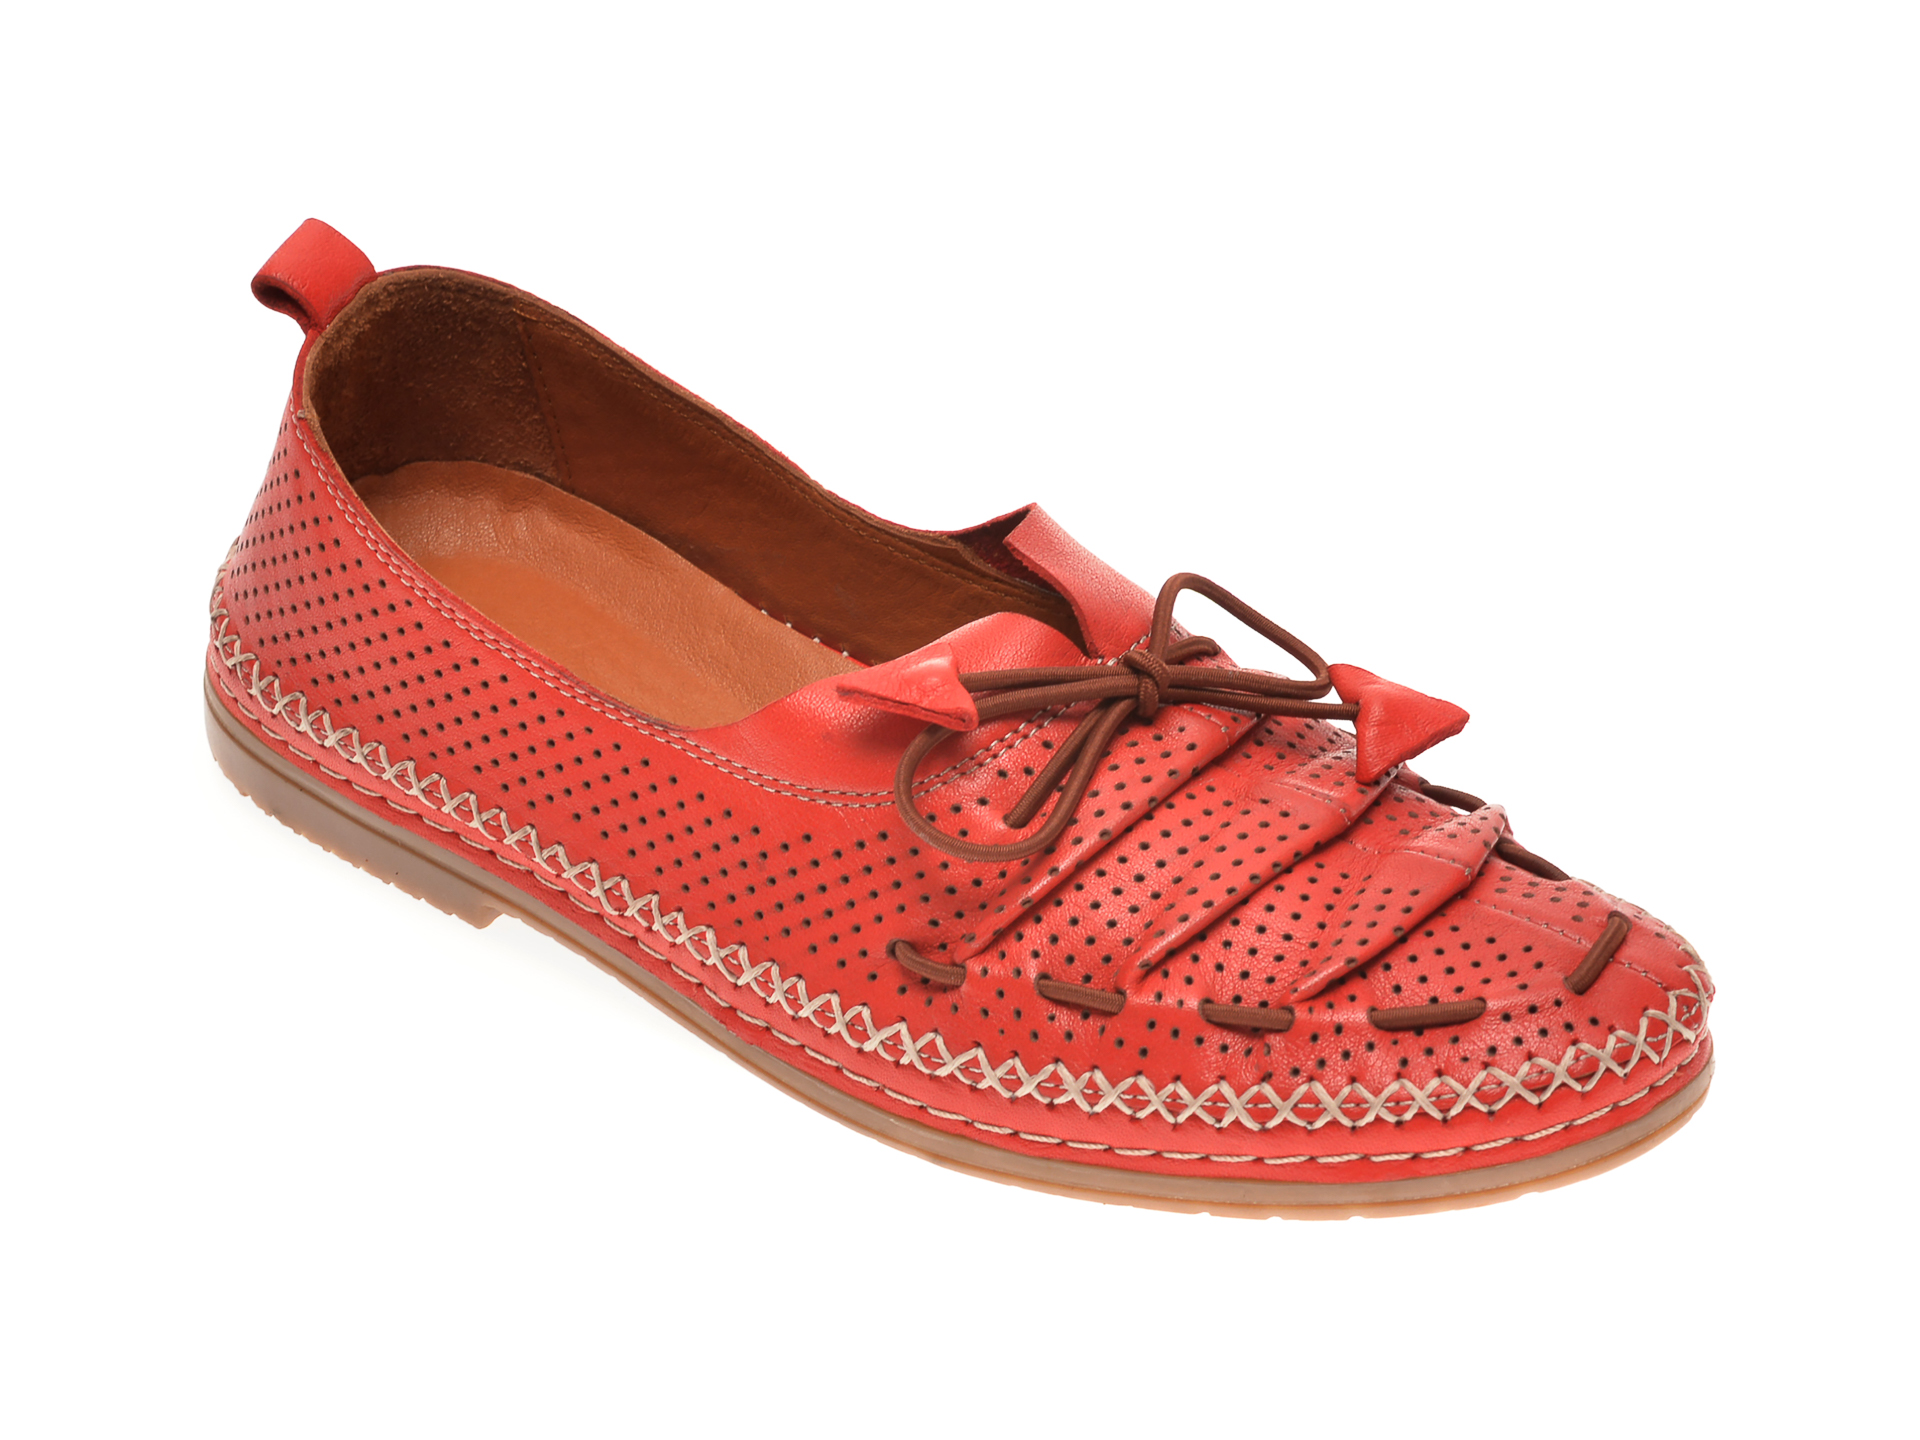 Pantofi BABOOS rosii, 1557011, din piele naturala